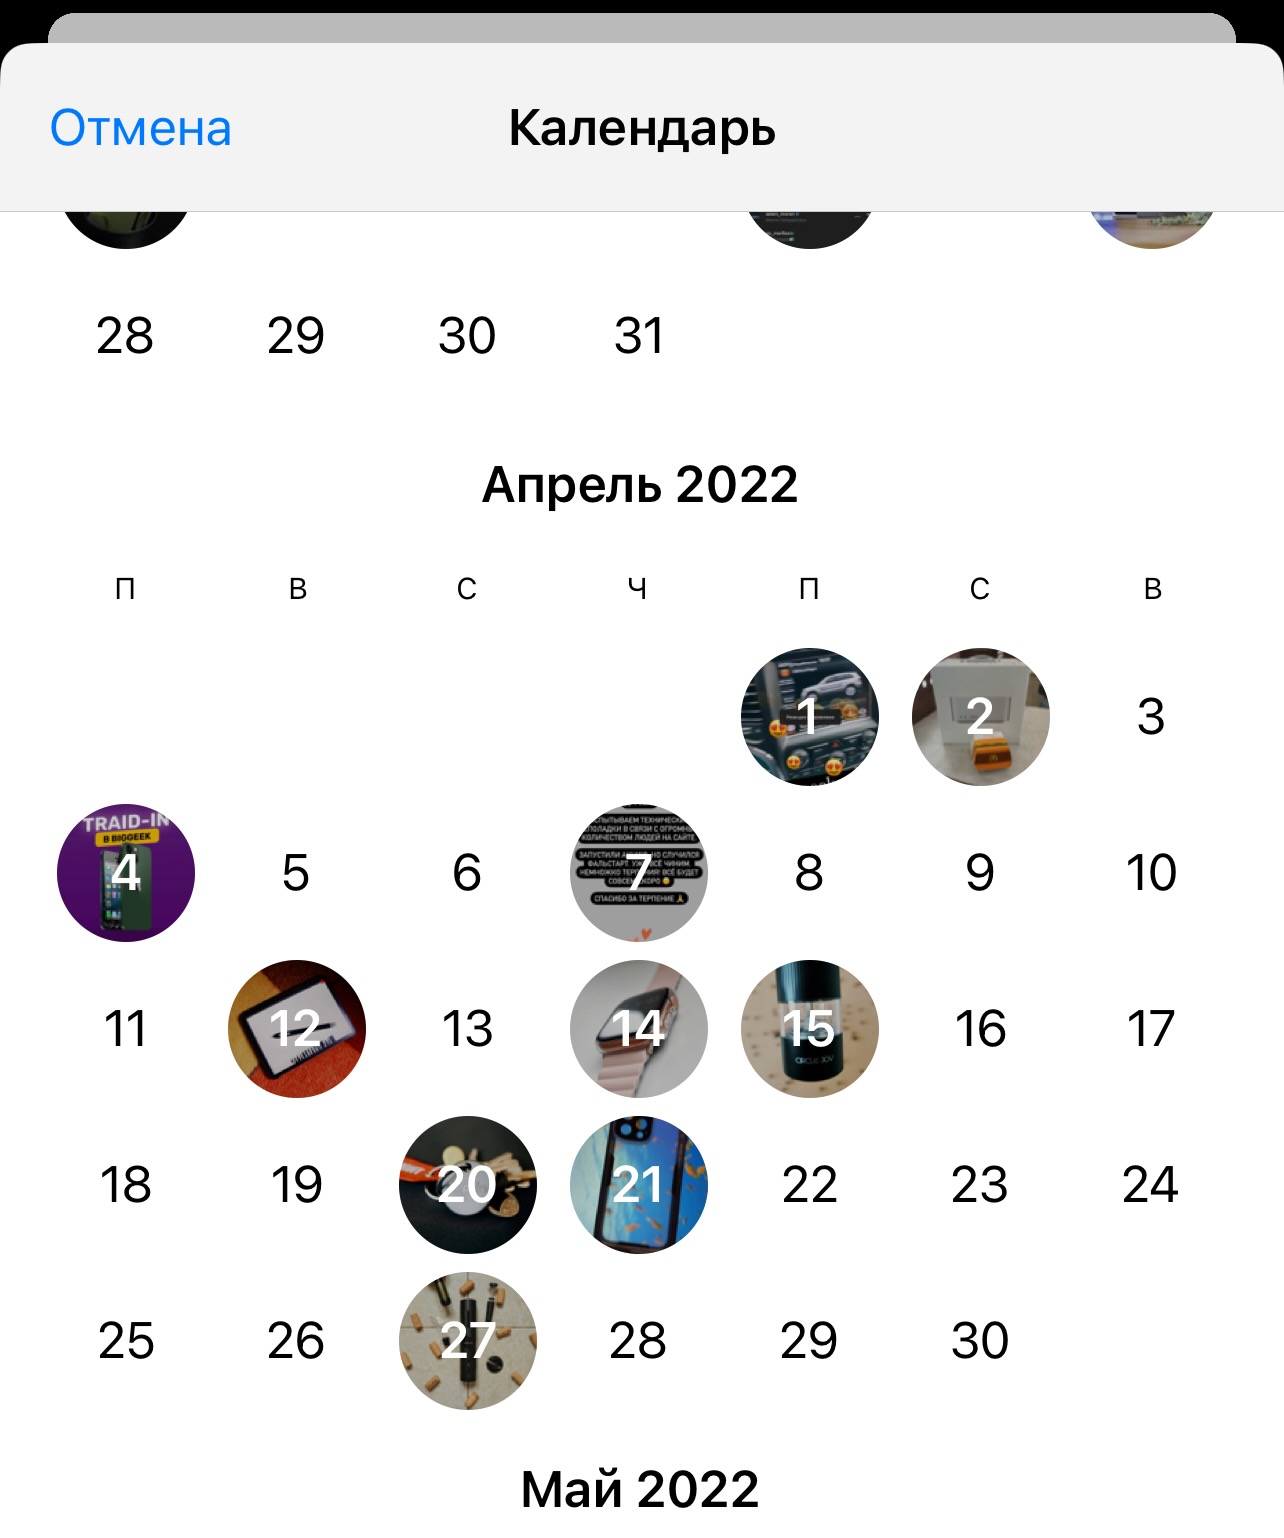 Как открыть календарь в телеграмме на андроид фото 2